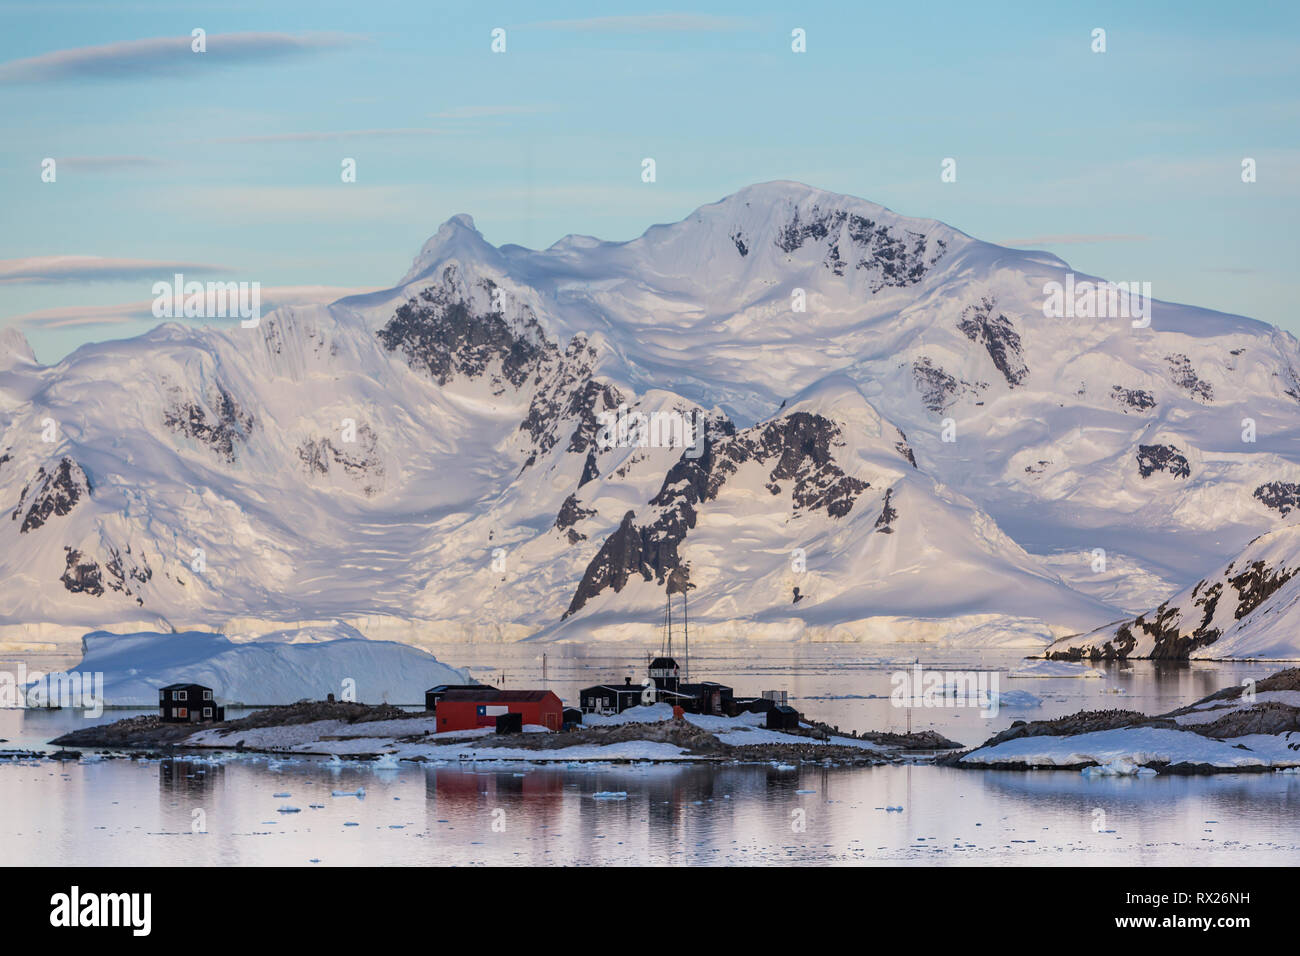 Montagne ghiacciate offrono lo sfondo per una base cilena in Paradise Harbour, Penisola Antartica, Antartide Foto Stock